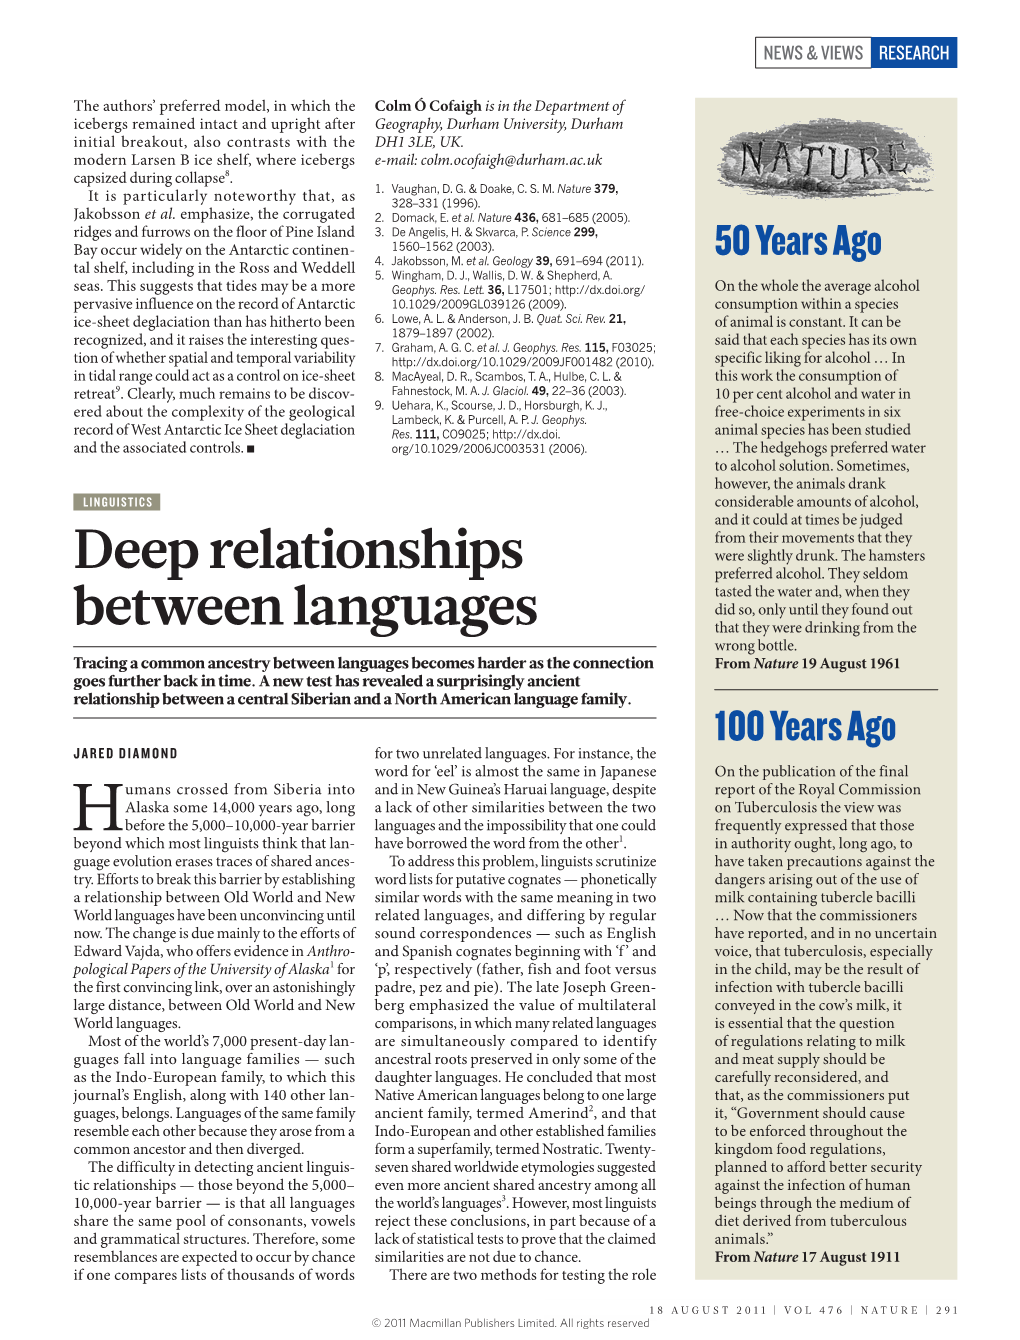 Deep Relationships Between Languages